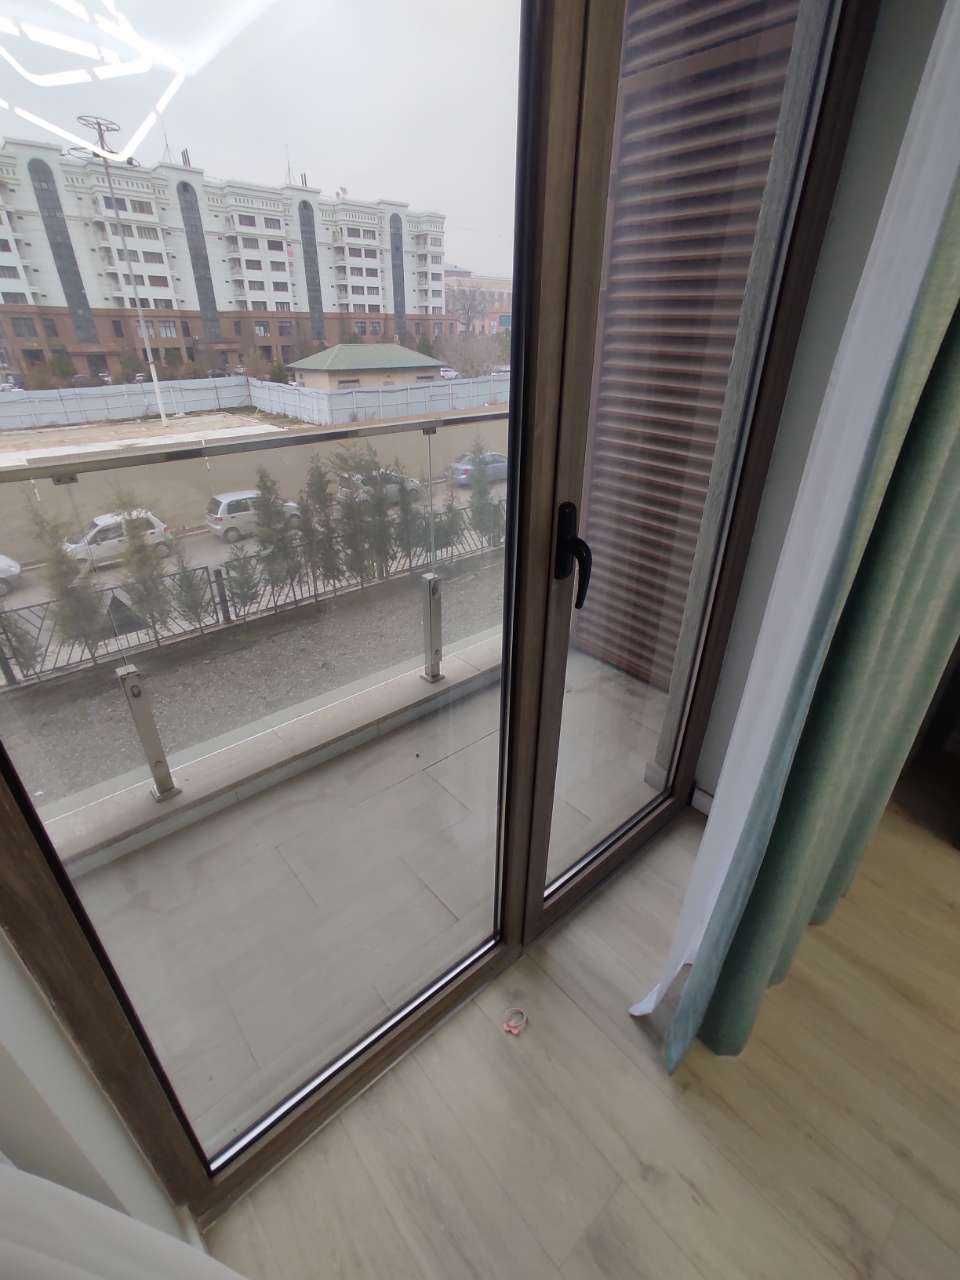 Tashkent city Gardens new euro apartment for freigners